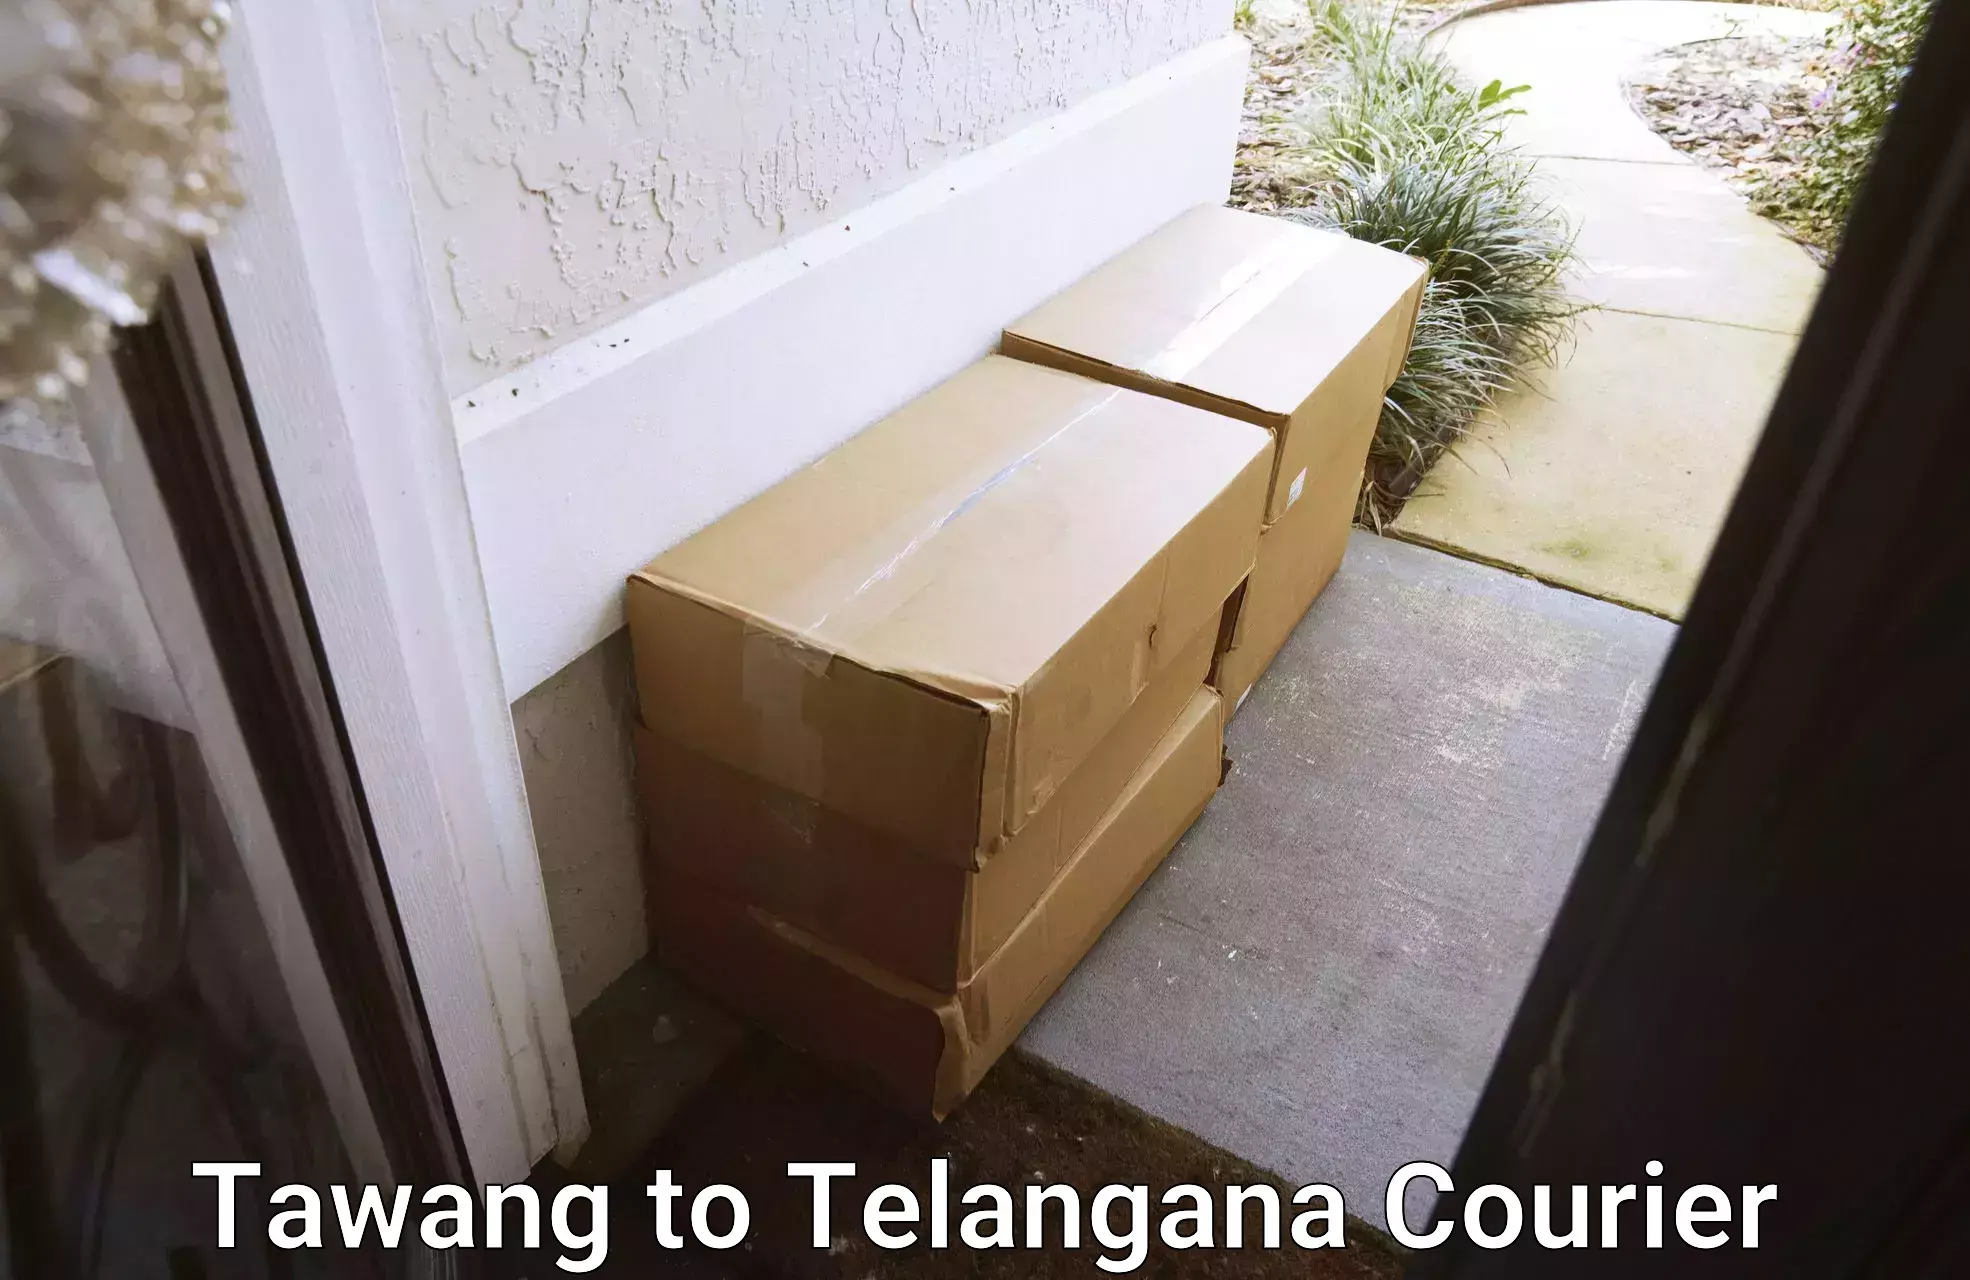 Efficient parcel transport in Tawang to Telangana